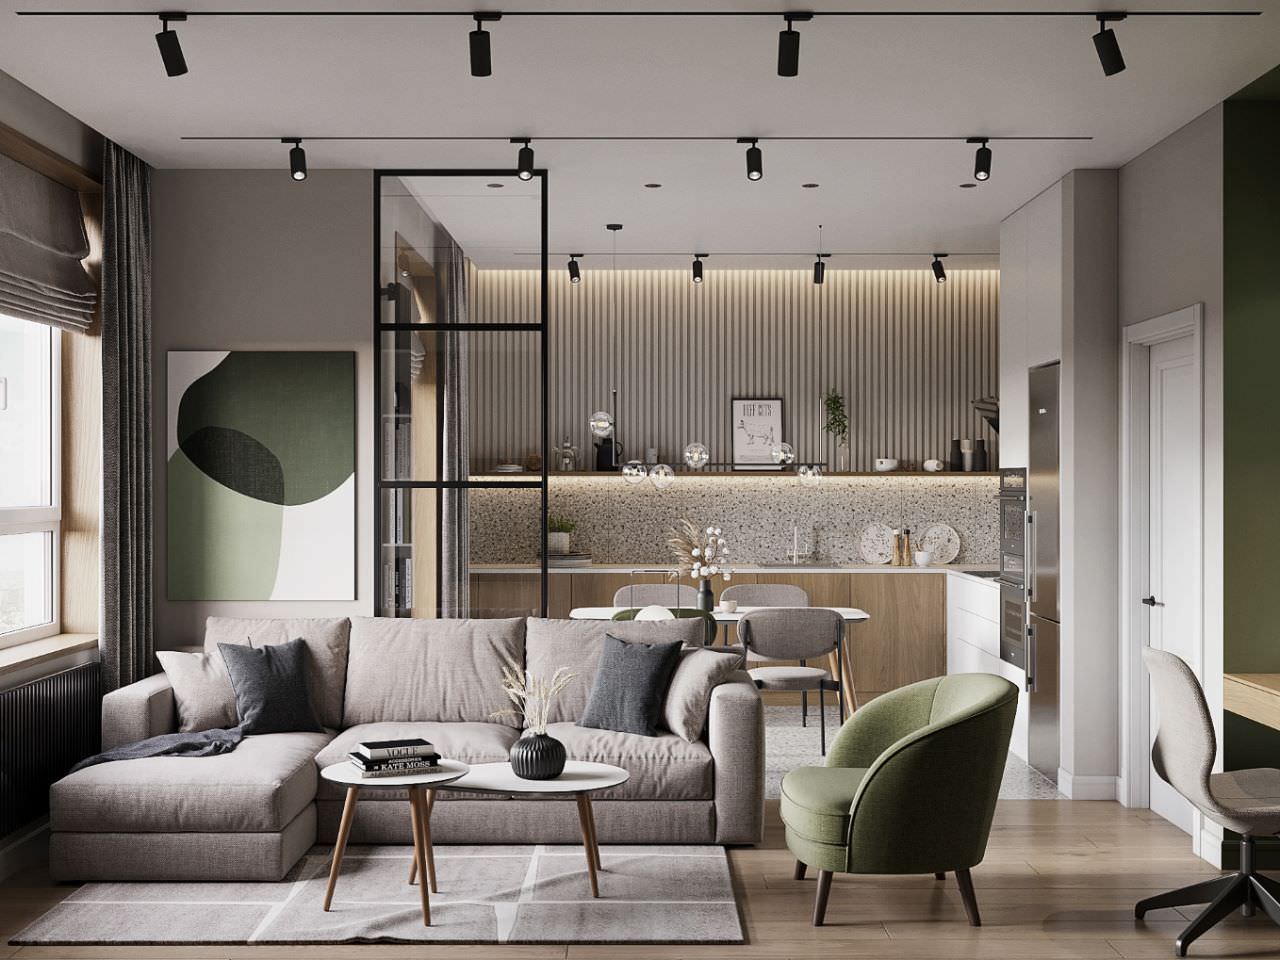  Thiết kế nội thất phòng khách hiện đại với tông màu xanh lá làm điển nhấn 